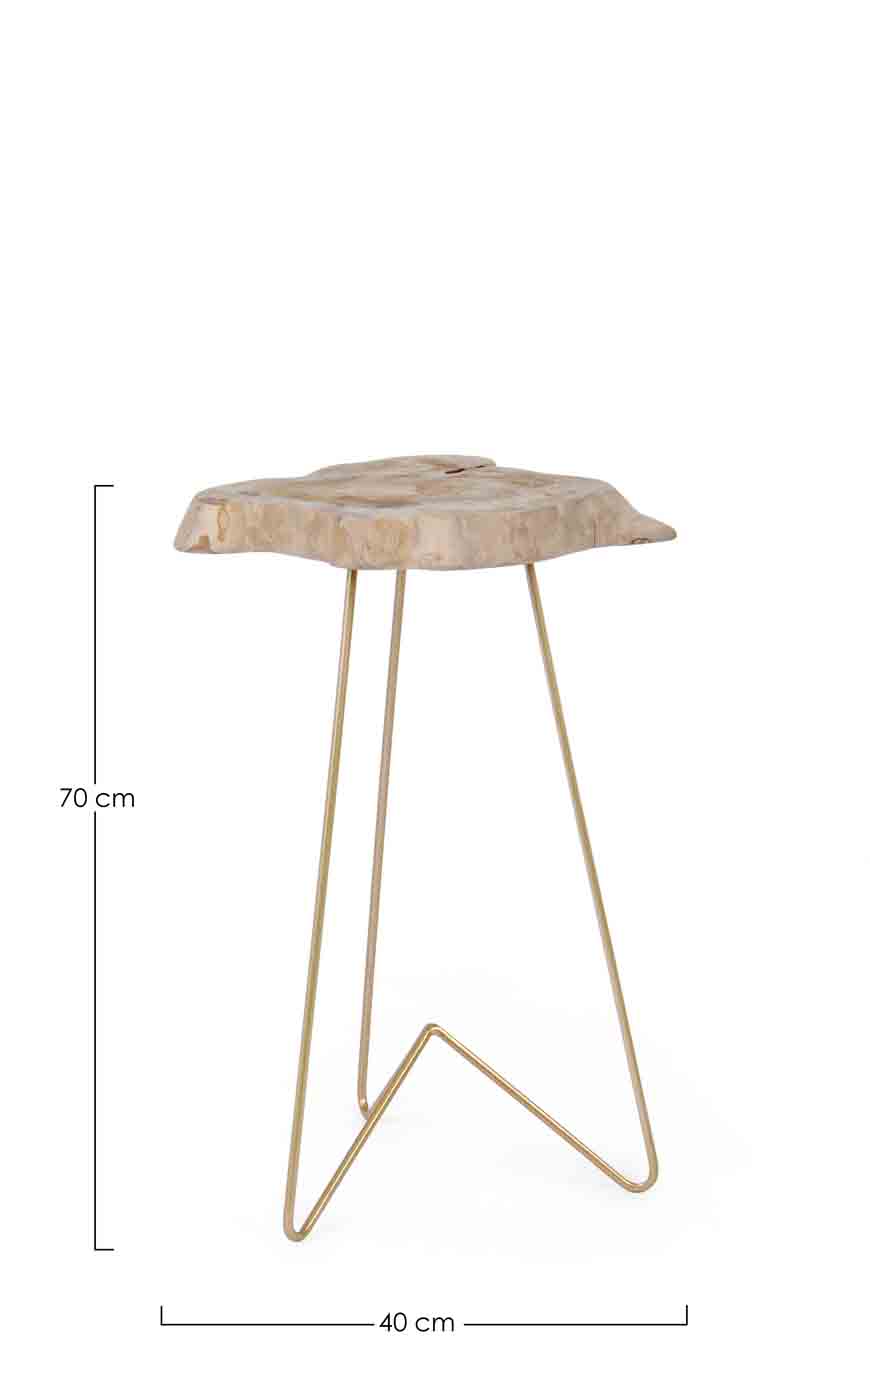 Die Tischplatte des Beistelltisches Savanna wurde aus einer Teakholz-Wurzel gefertigt, dadurch ist jeder Tisch ein Unikat. Das Gestell ist aus Stahl und wurde vergoldet.